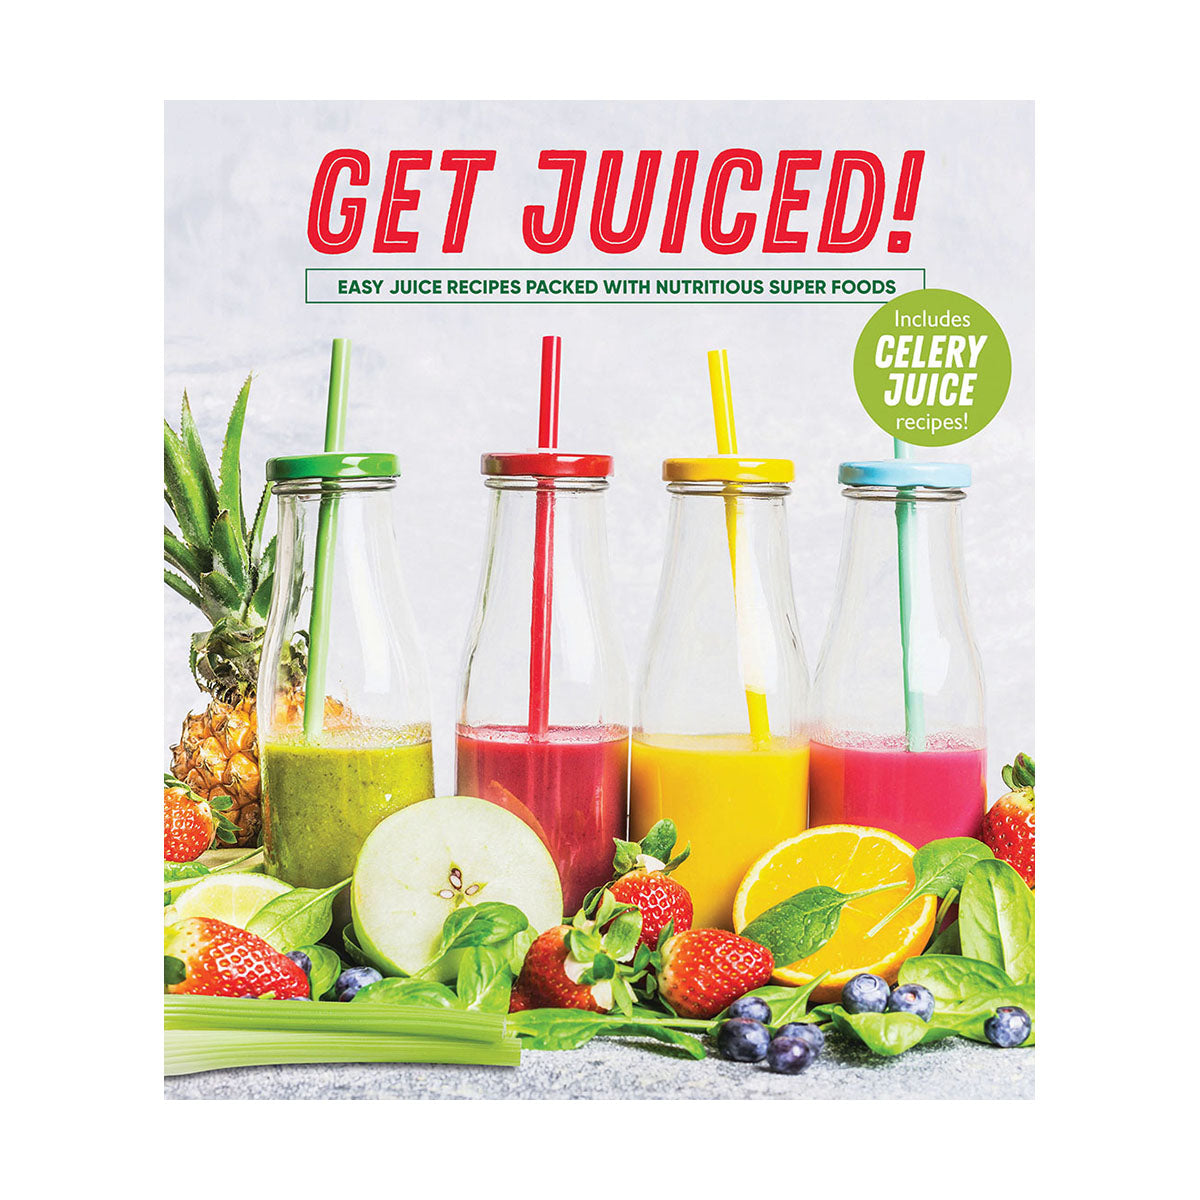 Get Juiced!